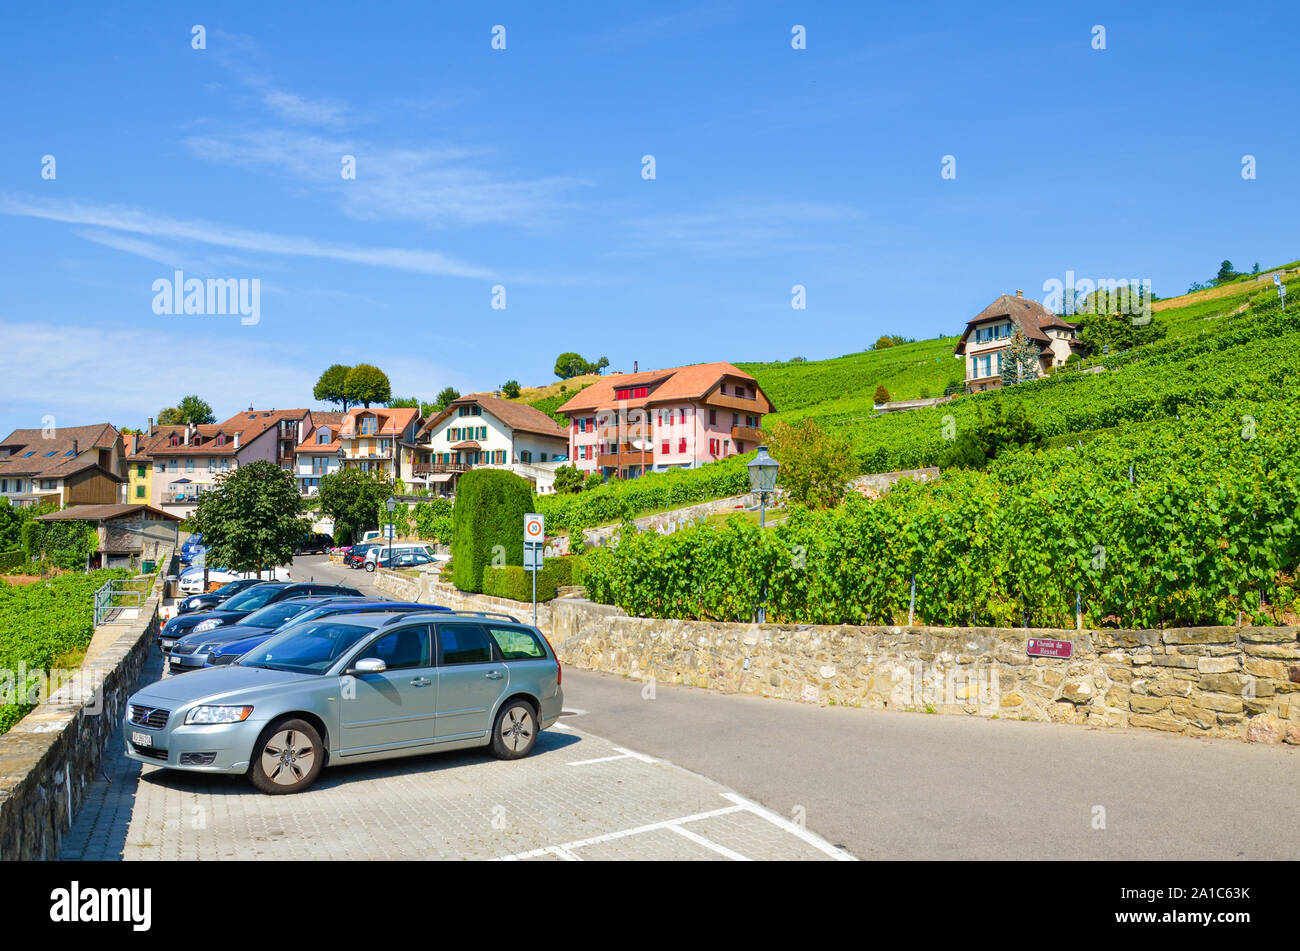 Rivaz, Svizzera - 26 Luglio 2019: Bella viticola Rivaz villaggio a Lavaux regione vinicola, Svizzera. Parcheggio circondato dal verde della vigna sul pendio dal pittoresco villaggio. Swiss estate. Foto Stock